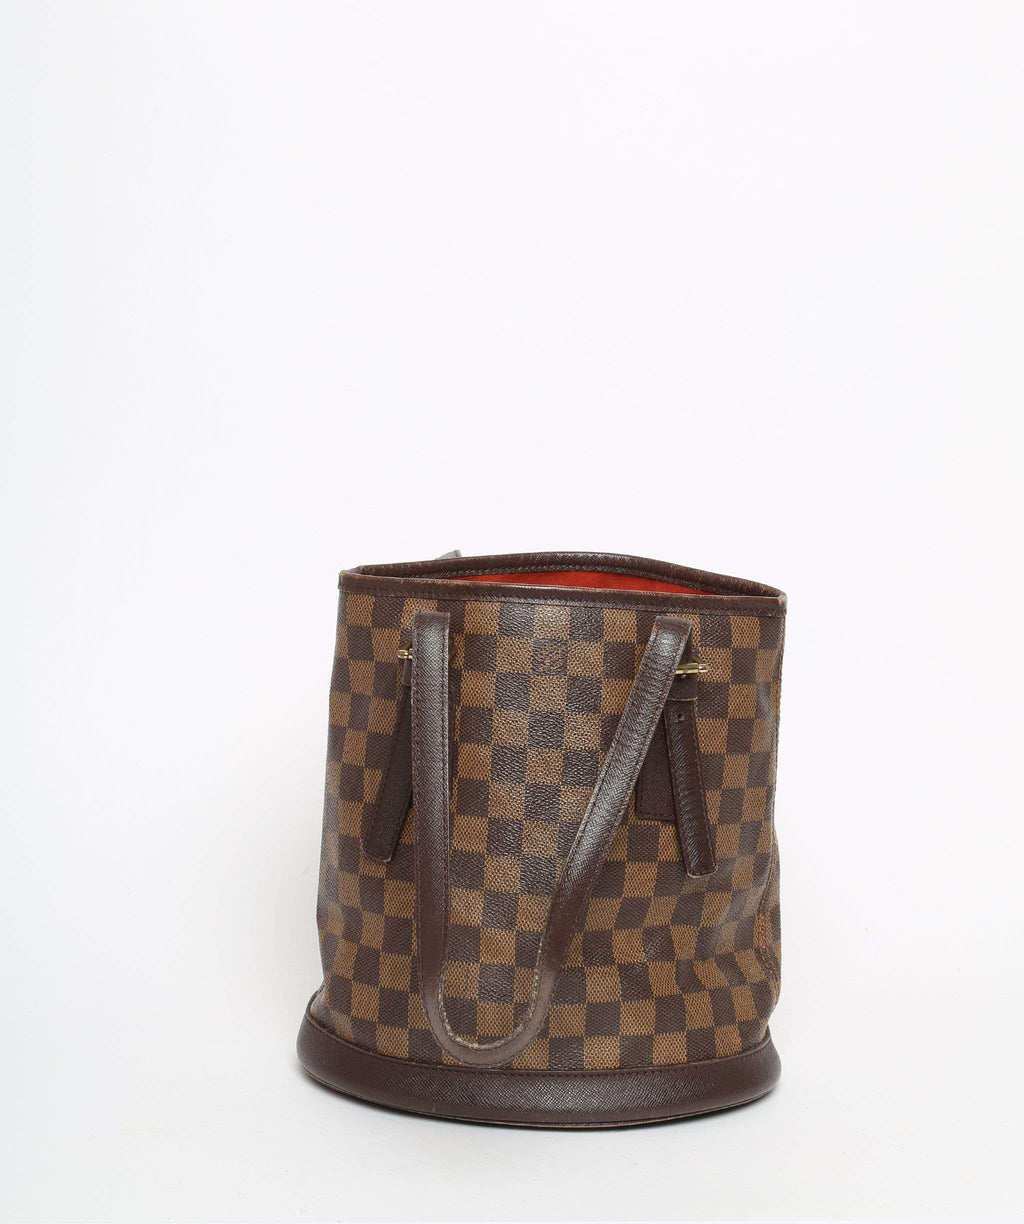 Shop for Louis Vuitton Damier Ebene Canvas Leather Bucket Marais